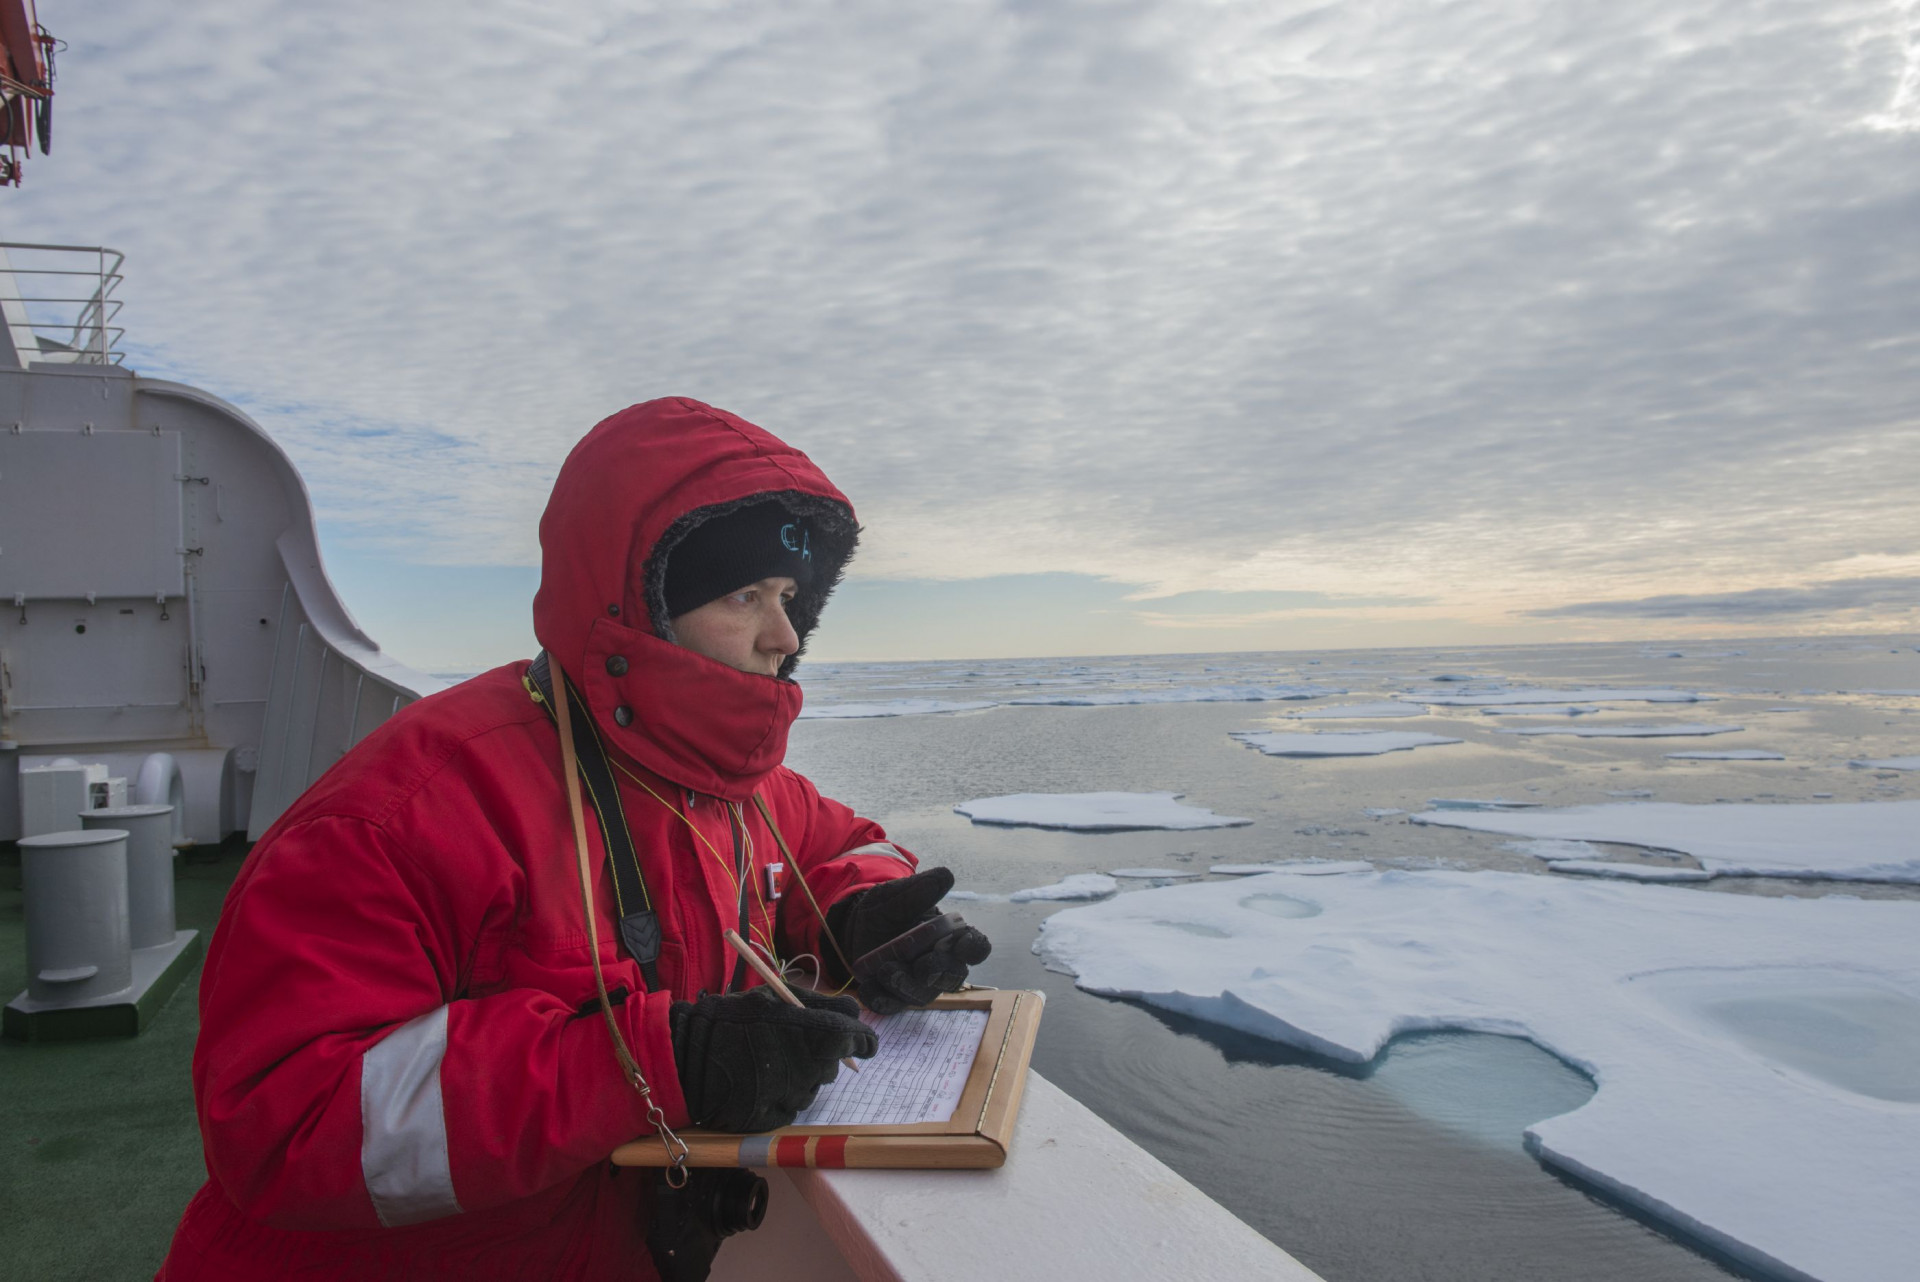 Wissenschaftlerin Melanie Bergmann in roter Jacke und mit Notizblock und Stift an der Reeling eines Schiffs. Auf dem Meer schwimmen Eisschollen